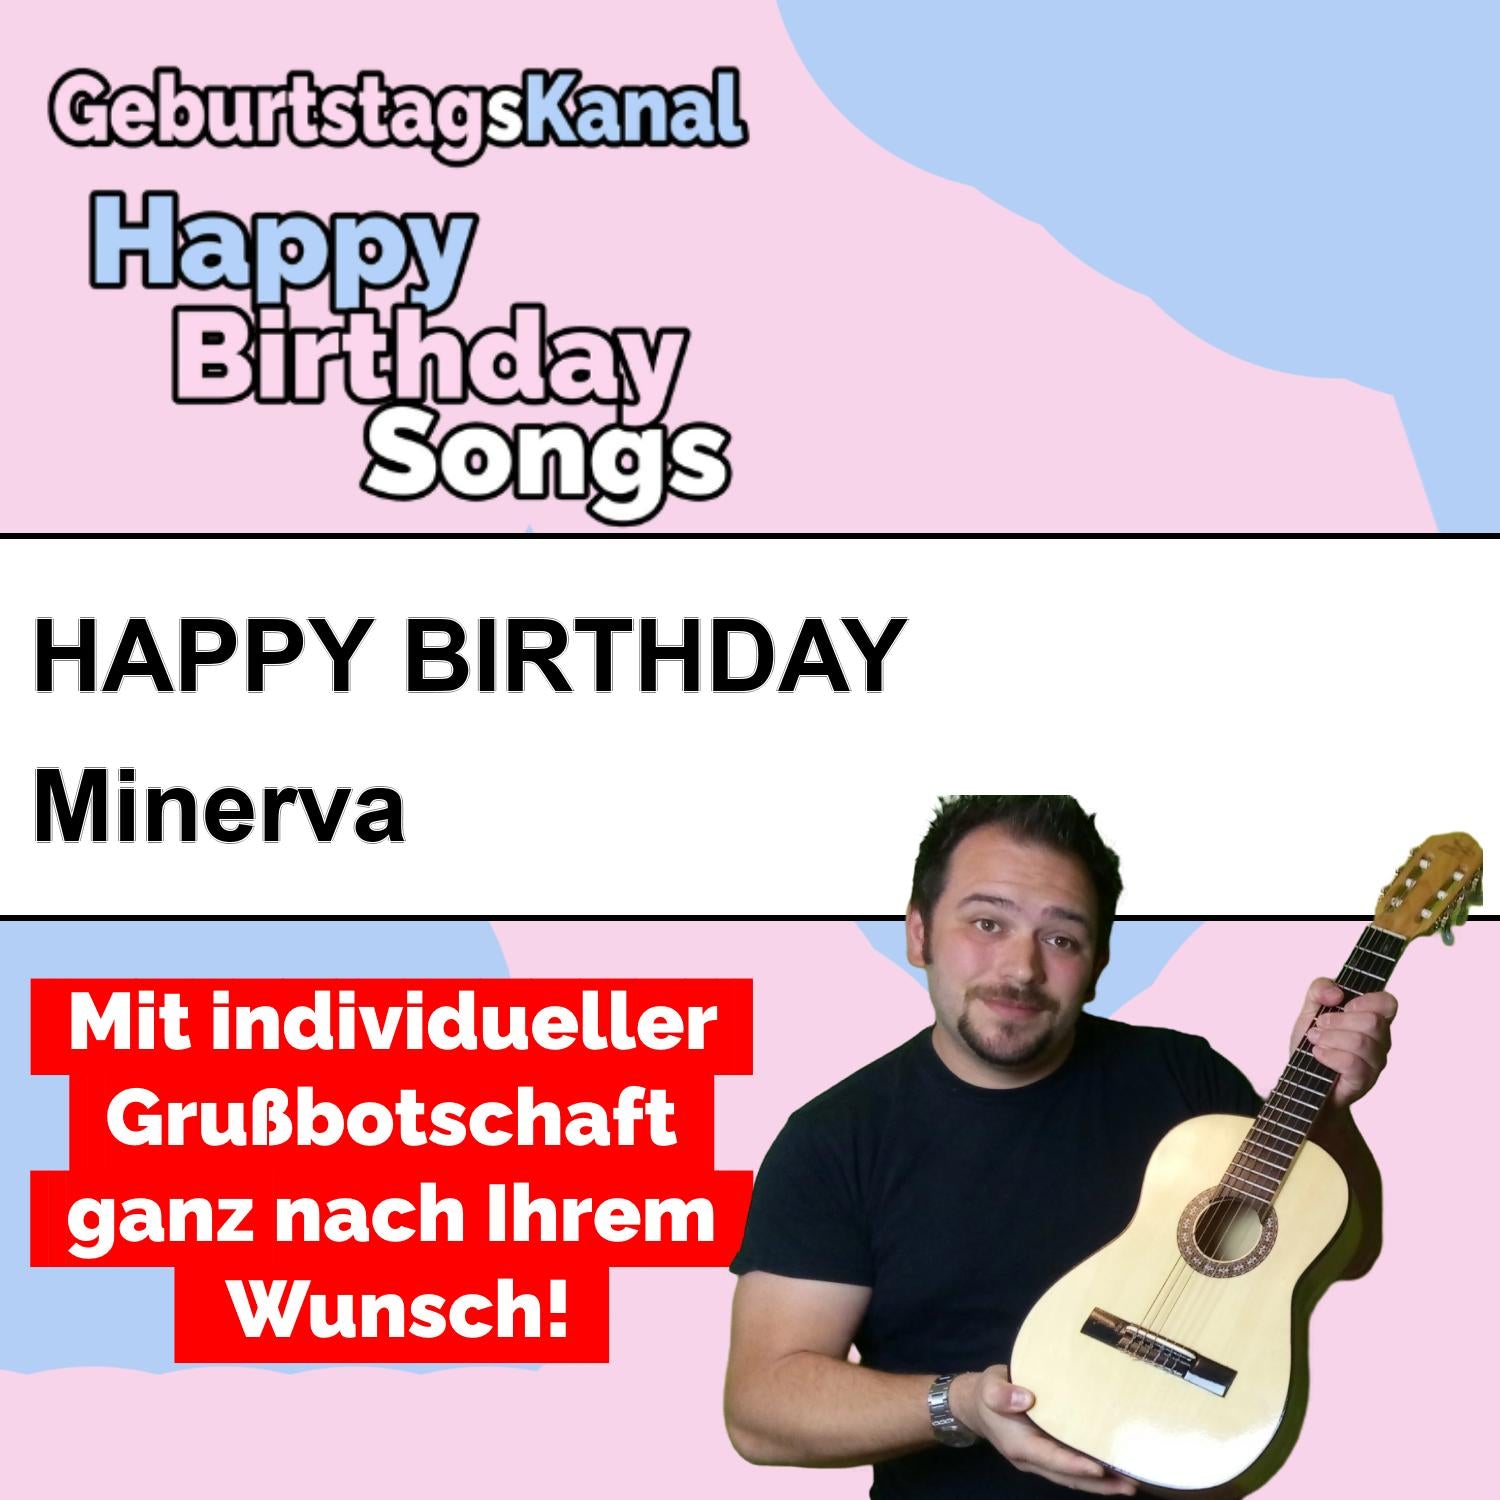 Produktbild Happy Birthday to you Minerva mit Wunschgrußbotschaft